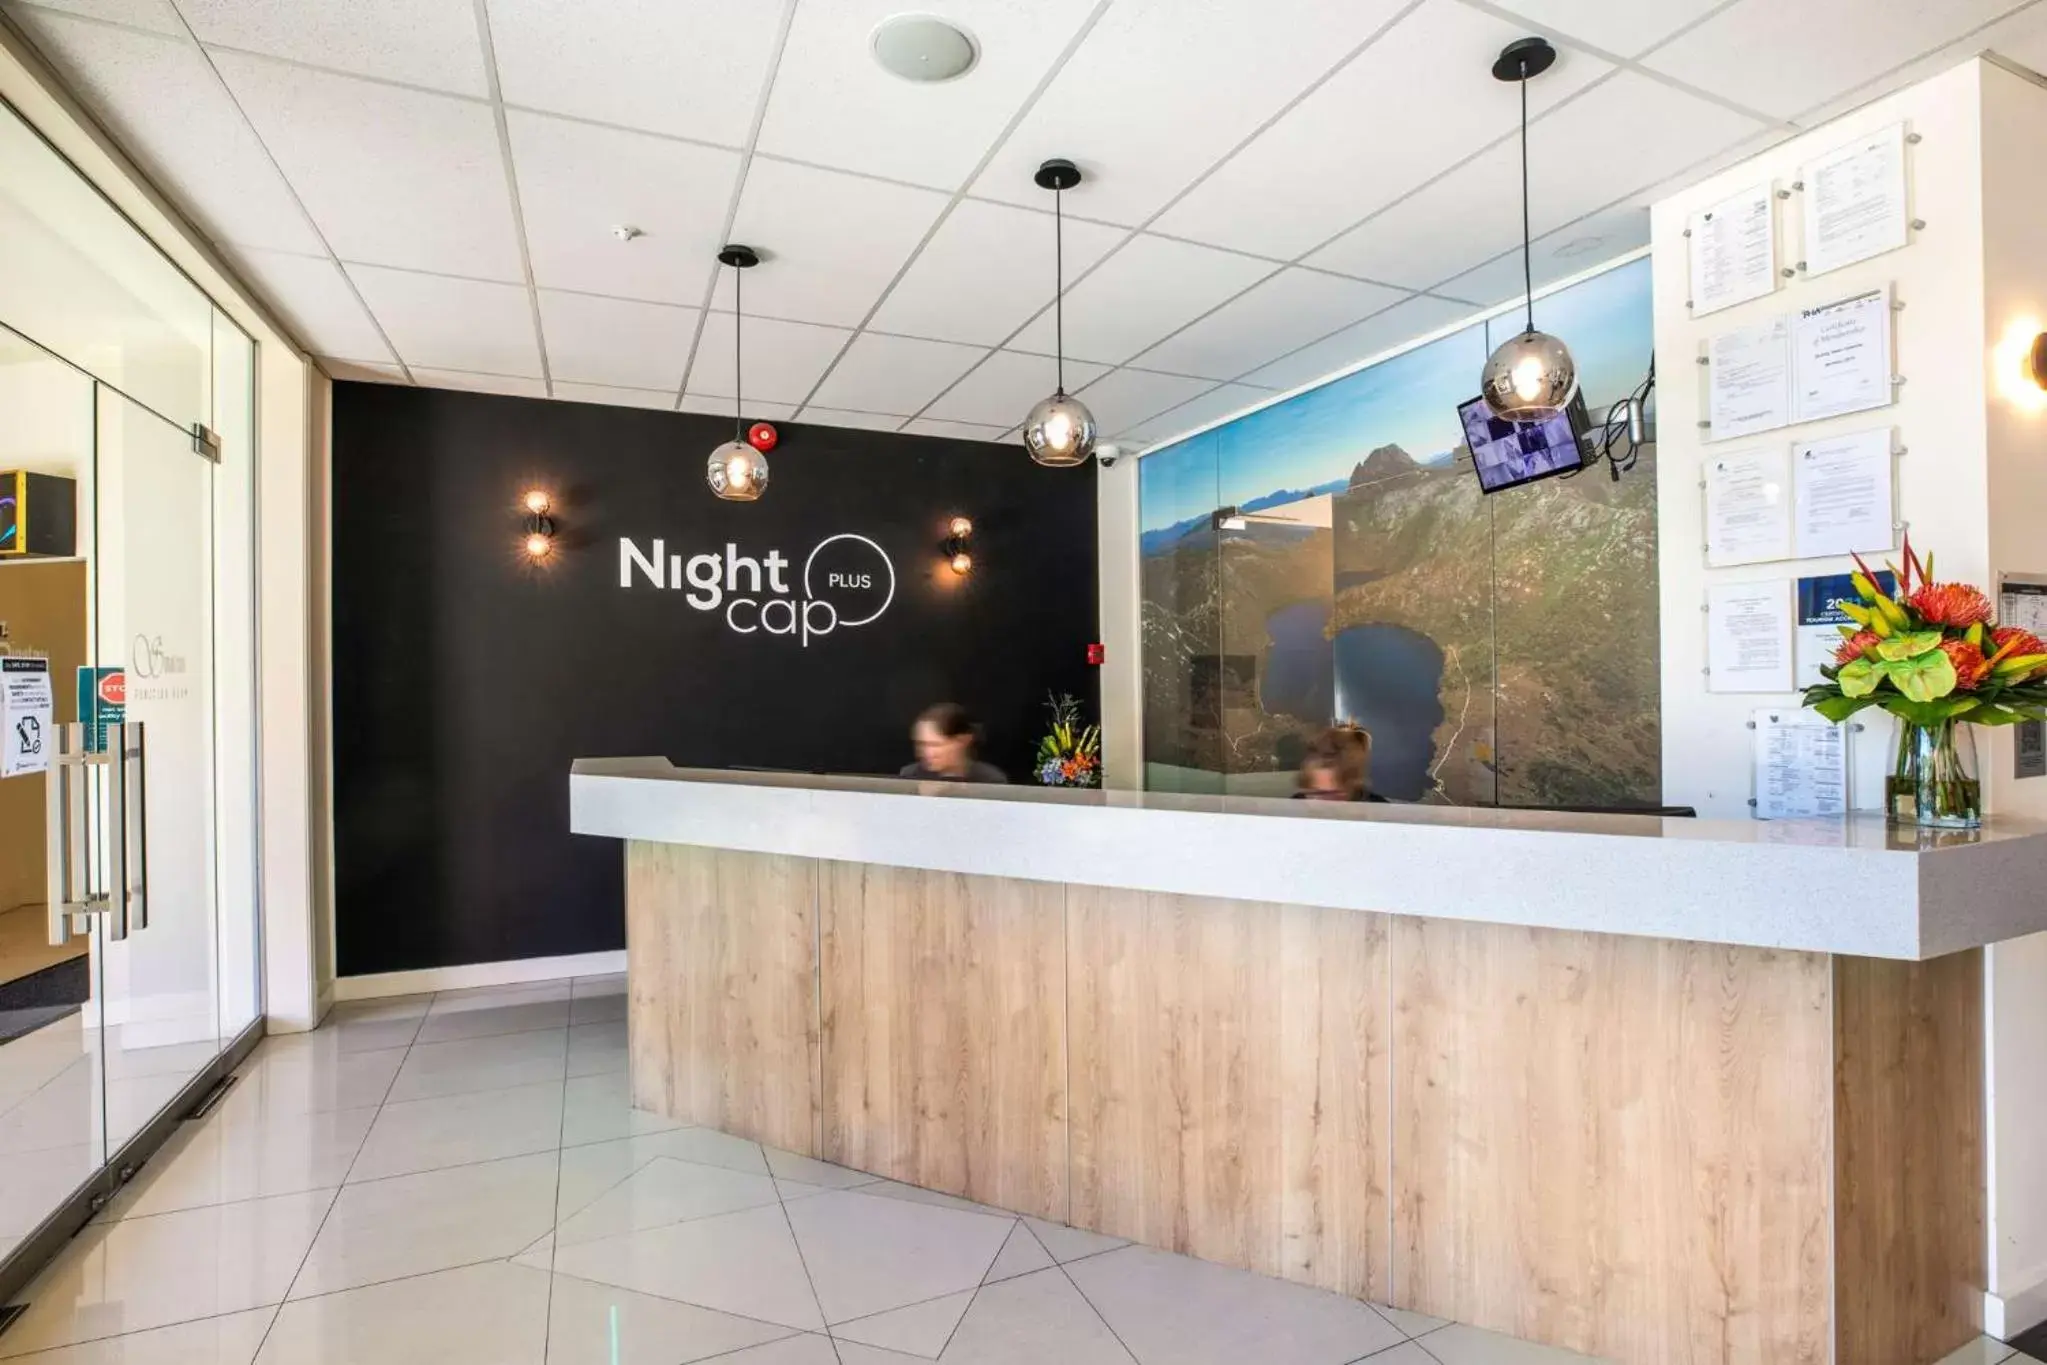 Lobby or reception, Lobby/Reception in Gateway Hotel by Nightcap Plus